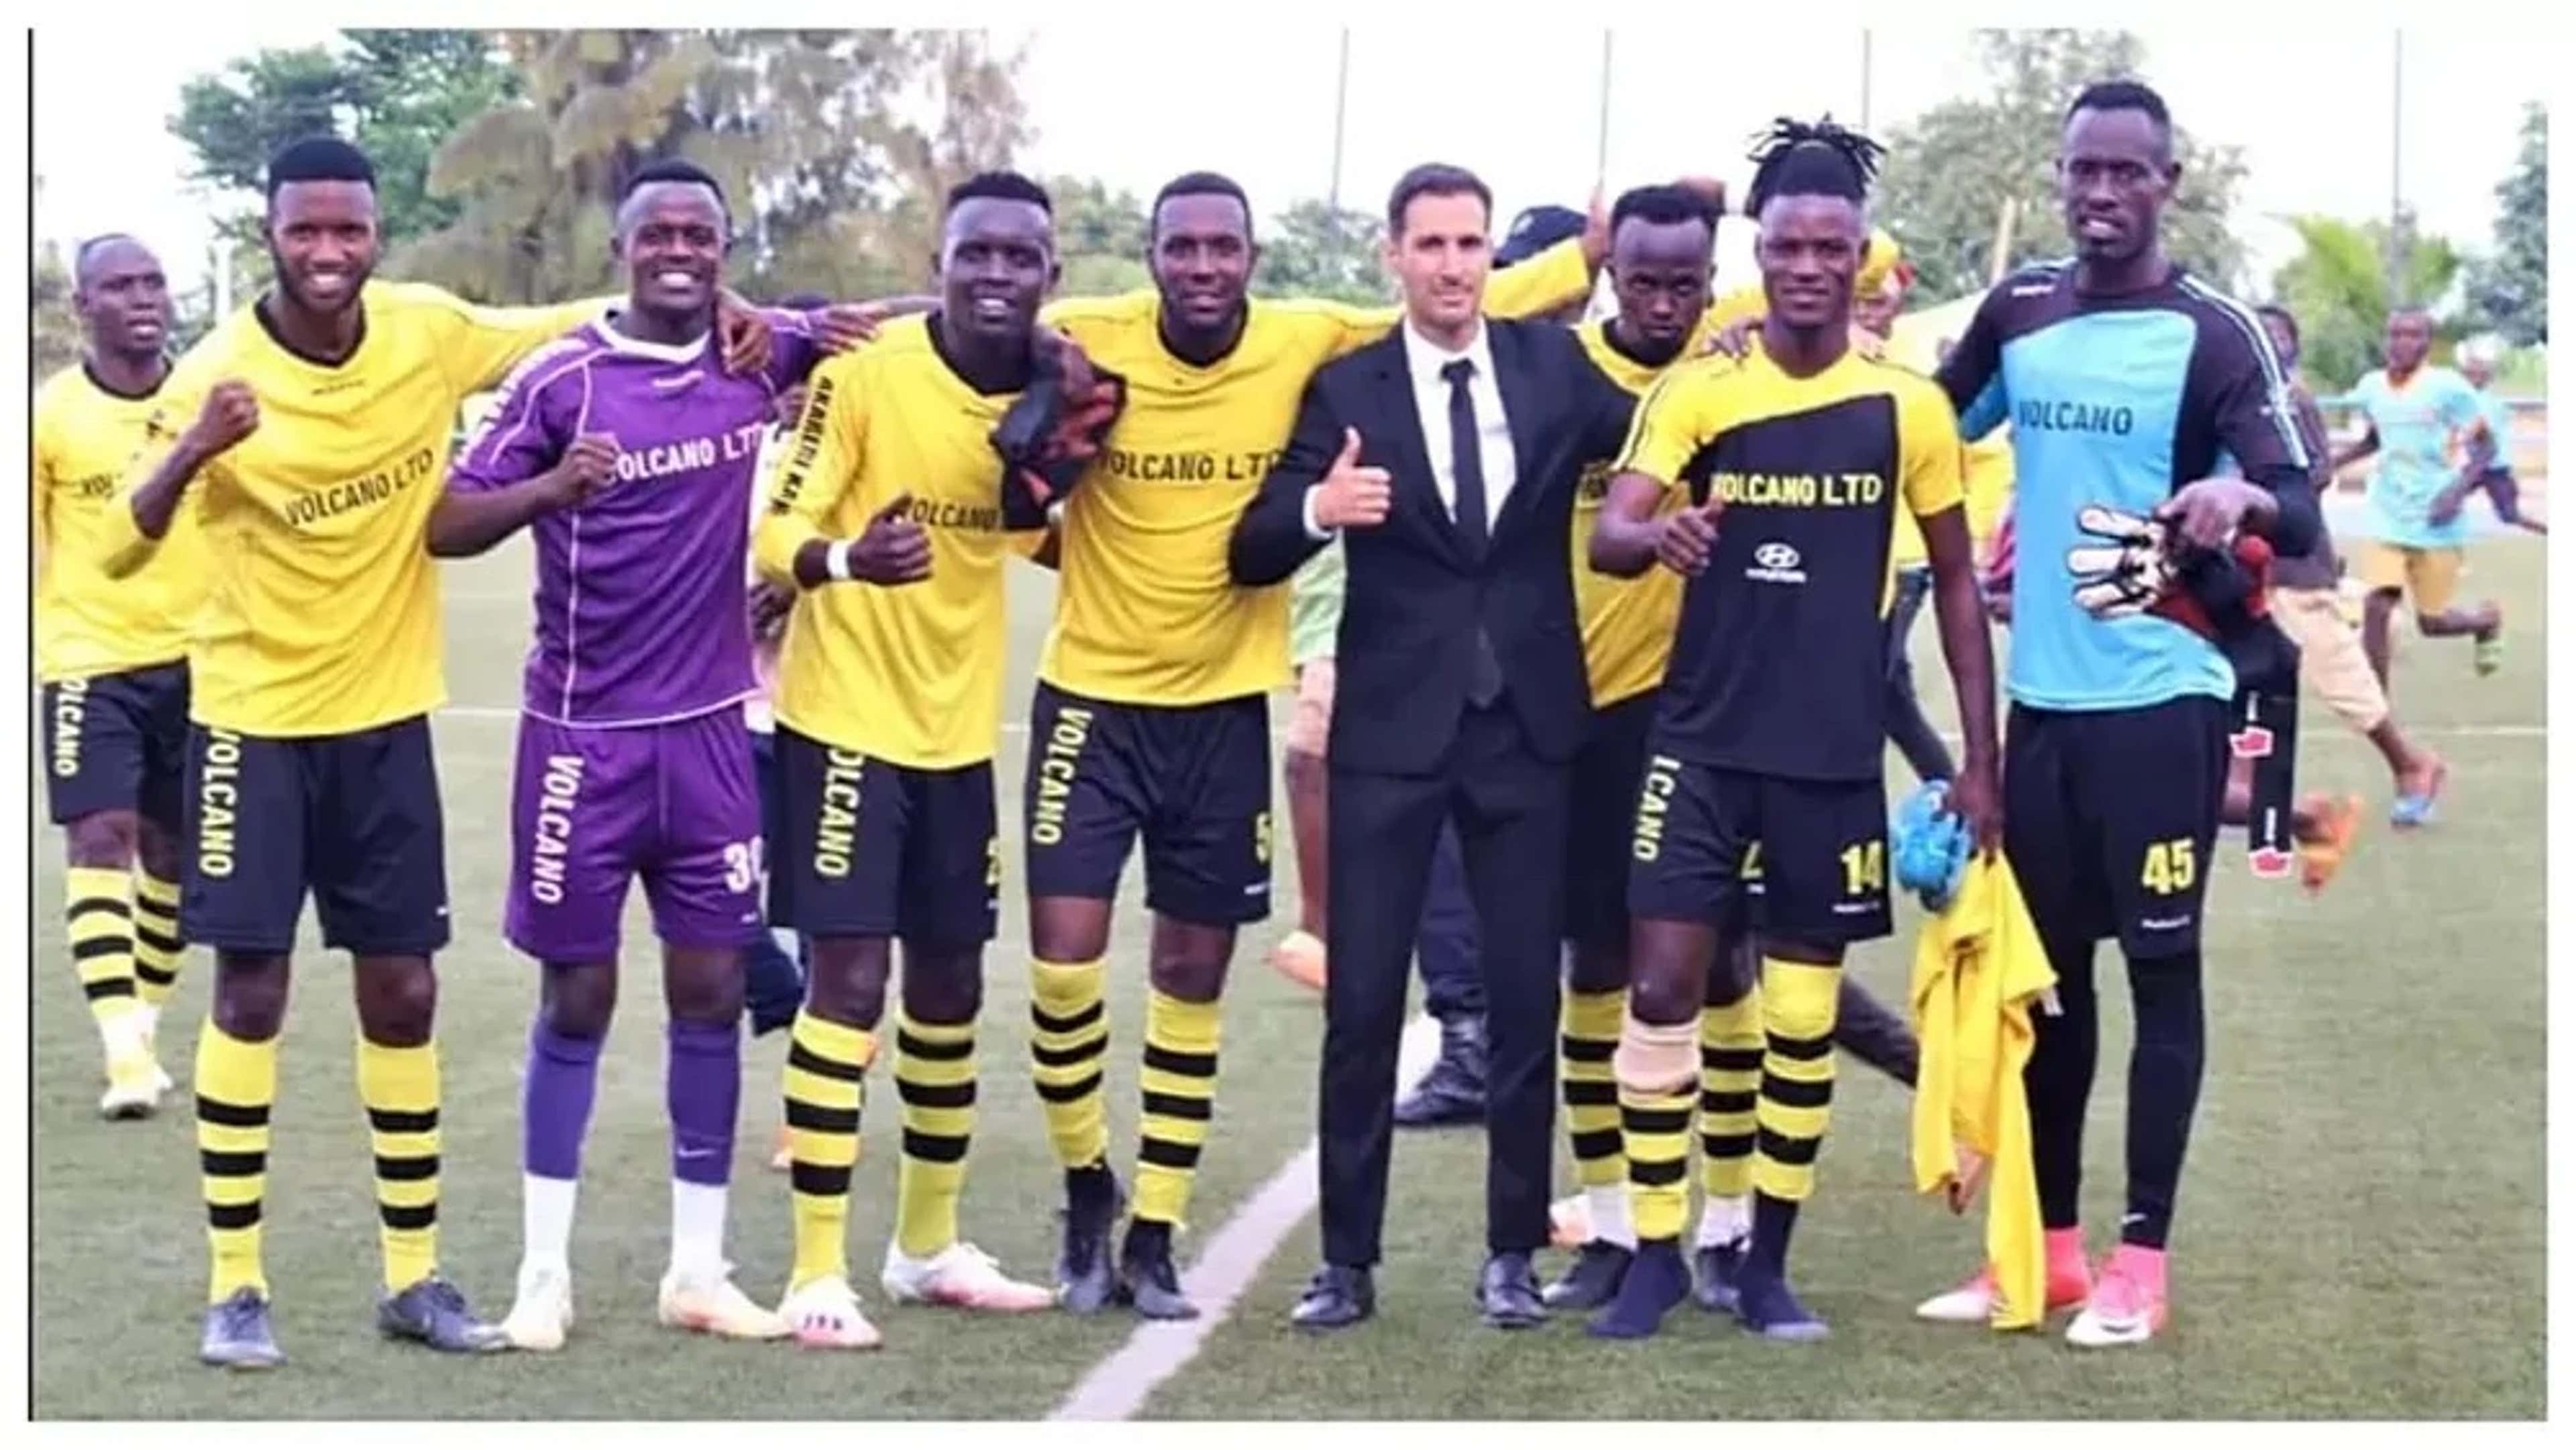 Tony Hernandez, qui a trouvé un poste d'entraîneur au Rwanda via Futboljobs, fait partie des candidats pour devenir sélectionneur de l'équipe nationale après avoir remporté la Super Coupe locale.